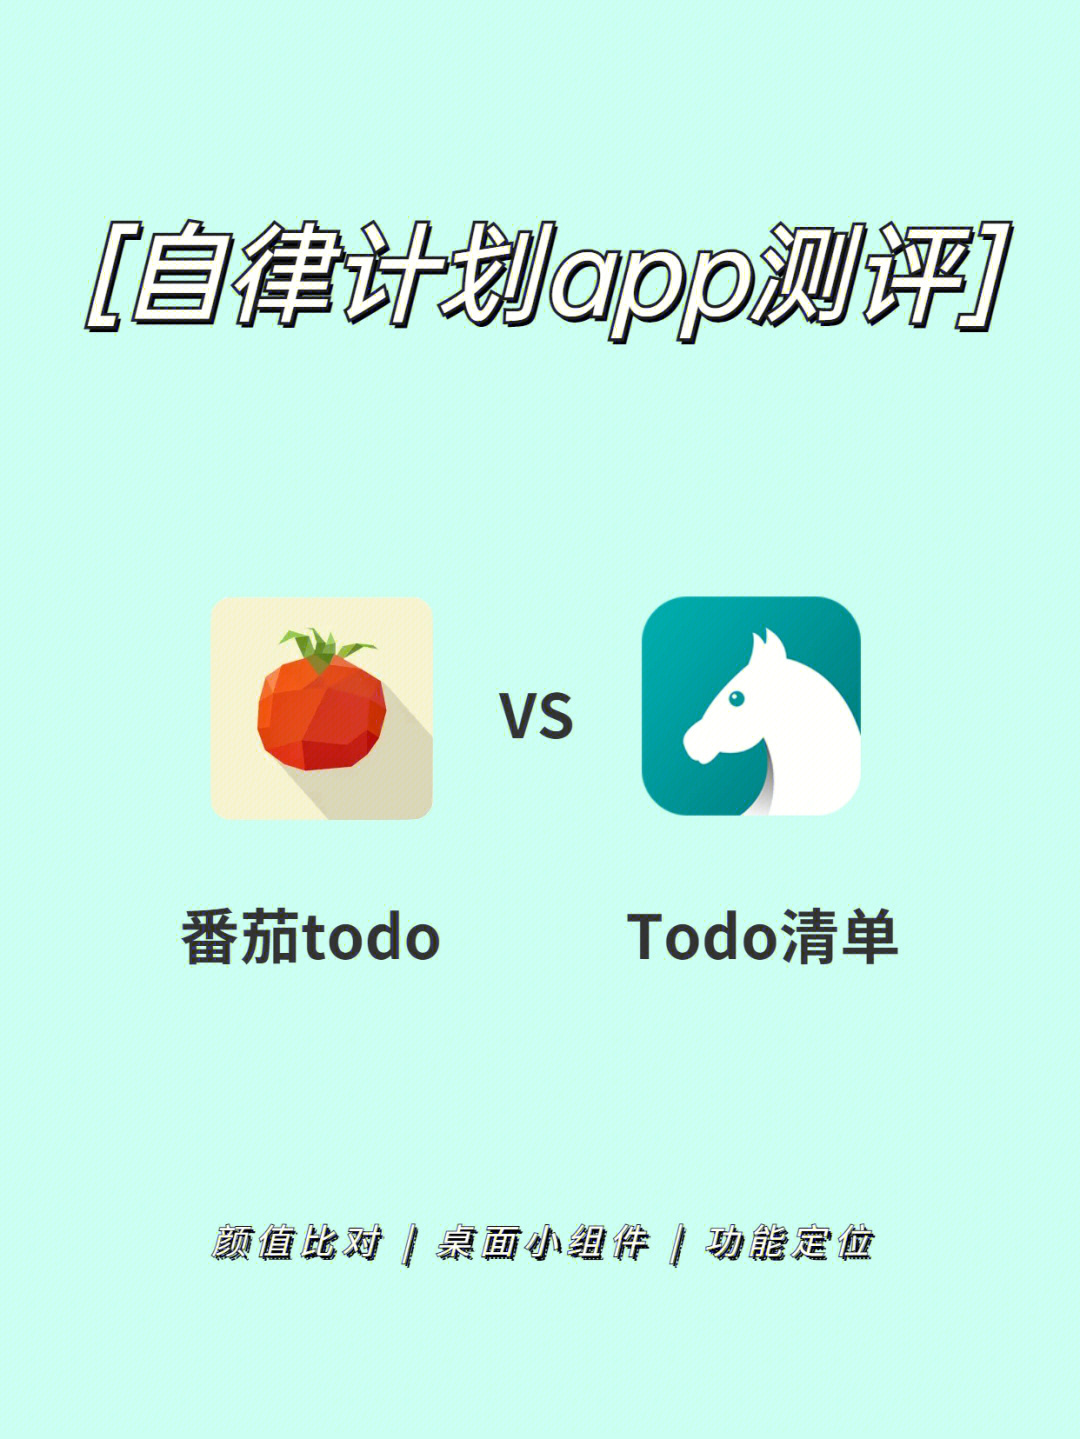 超实用学习app测评番茄todotodo清单